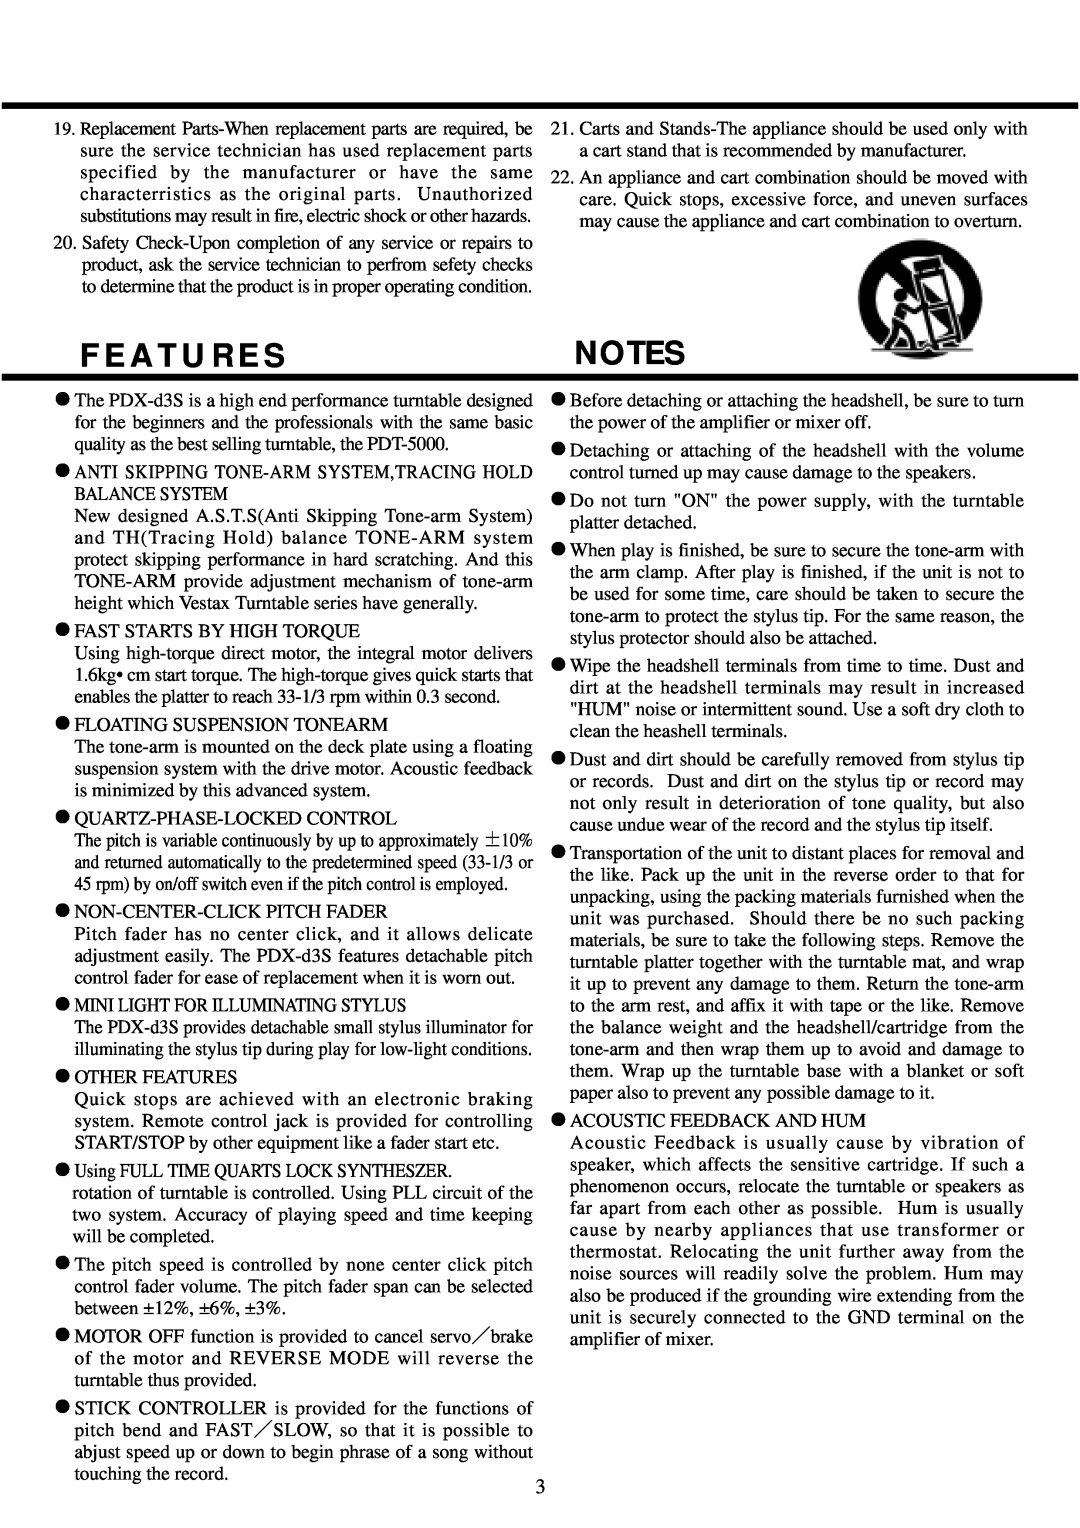 Vestax PDX-d3S owner manual F E A T U R E S 